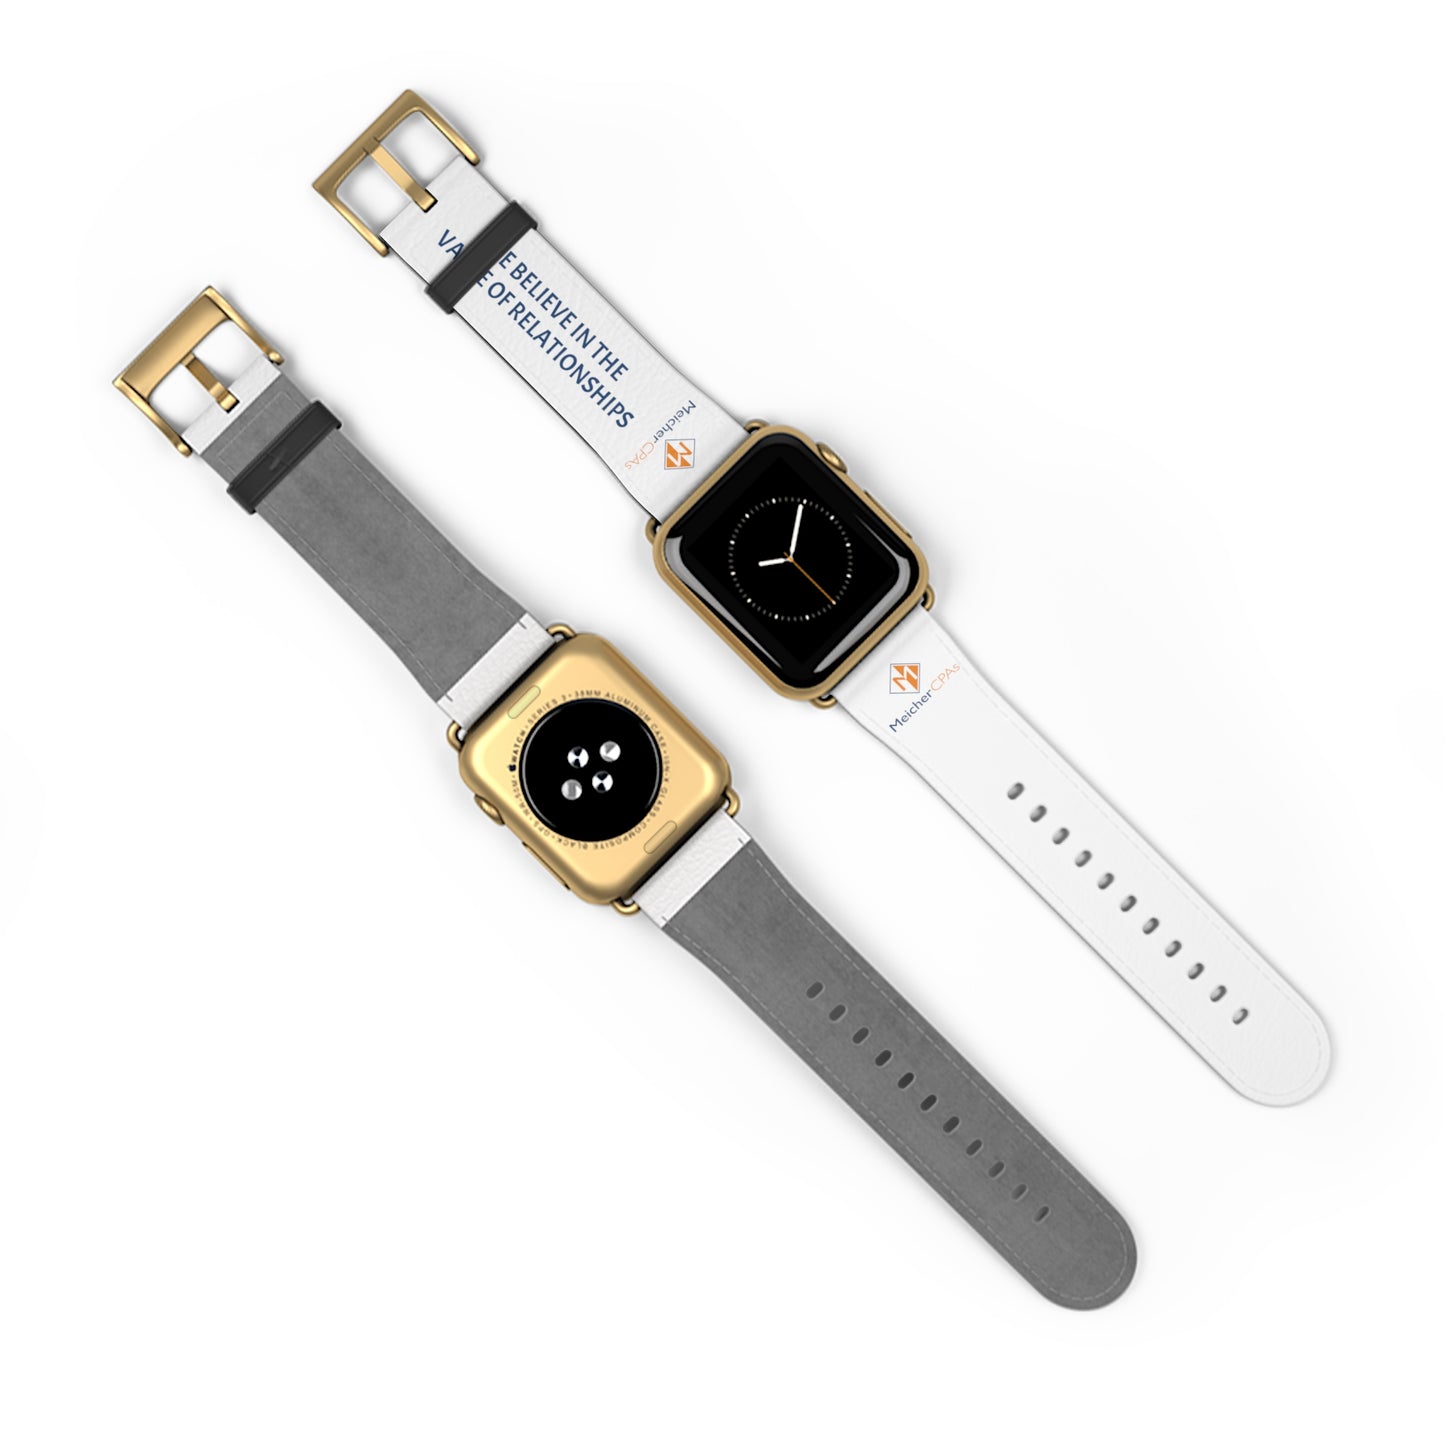 Meicher - White Apple Watch Band